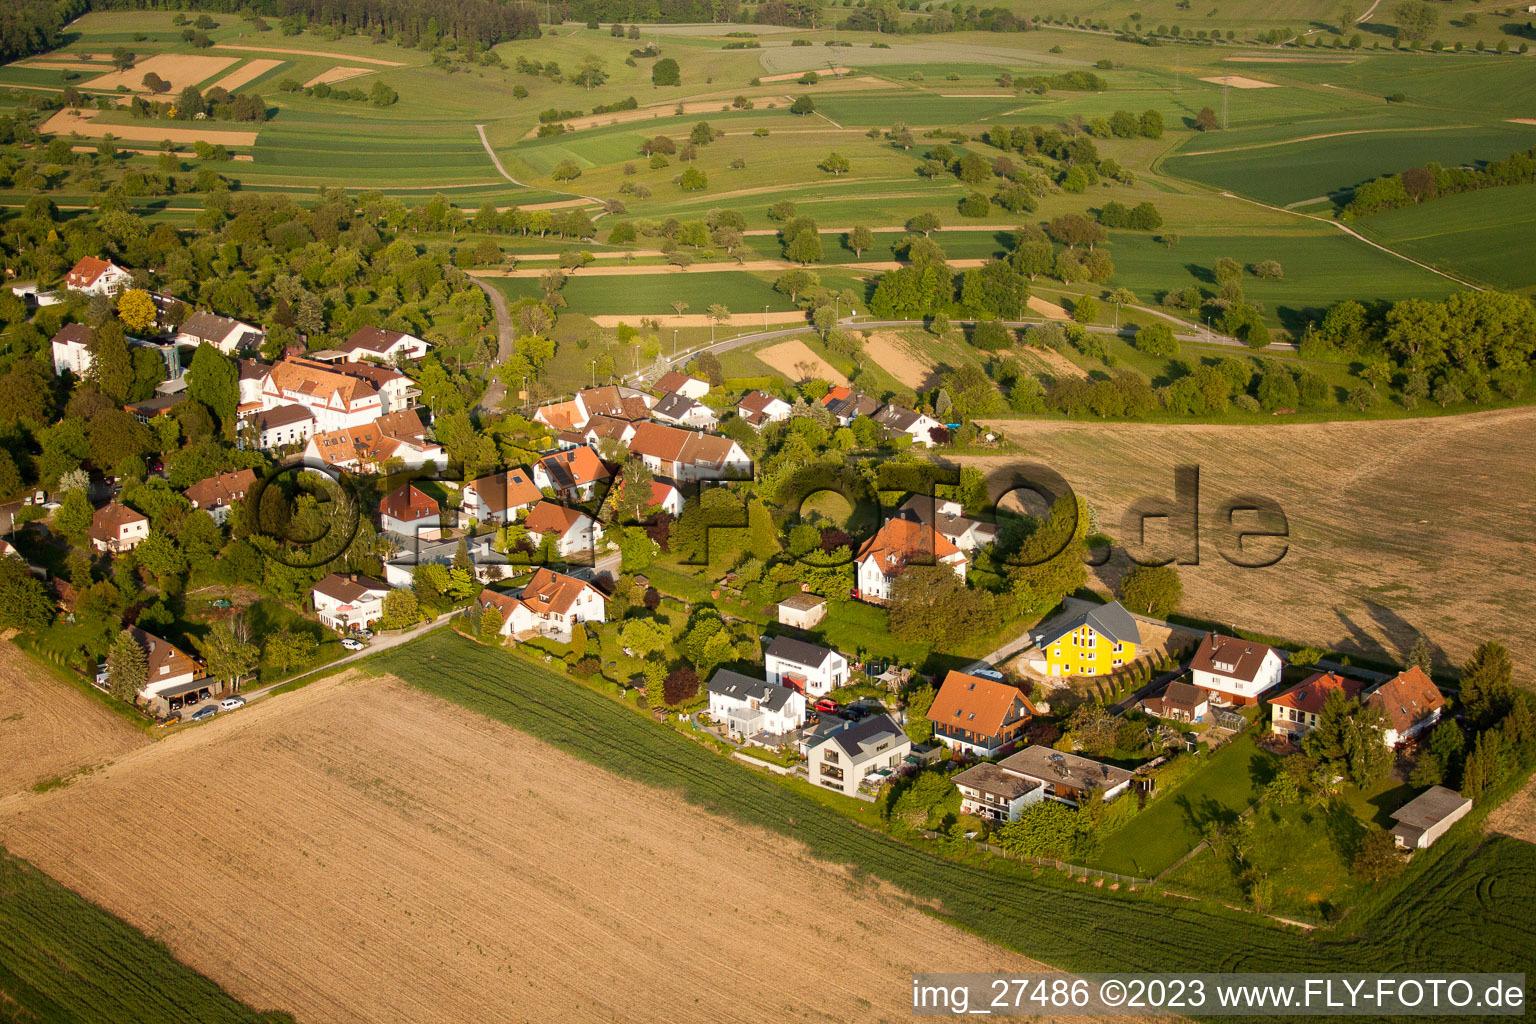 Ortsteil Durlach in Karlsruhe im Bundesland Baden-Württemberg, Deutschland von oben gesehen